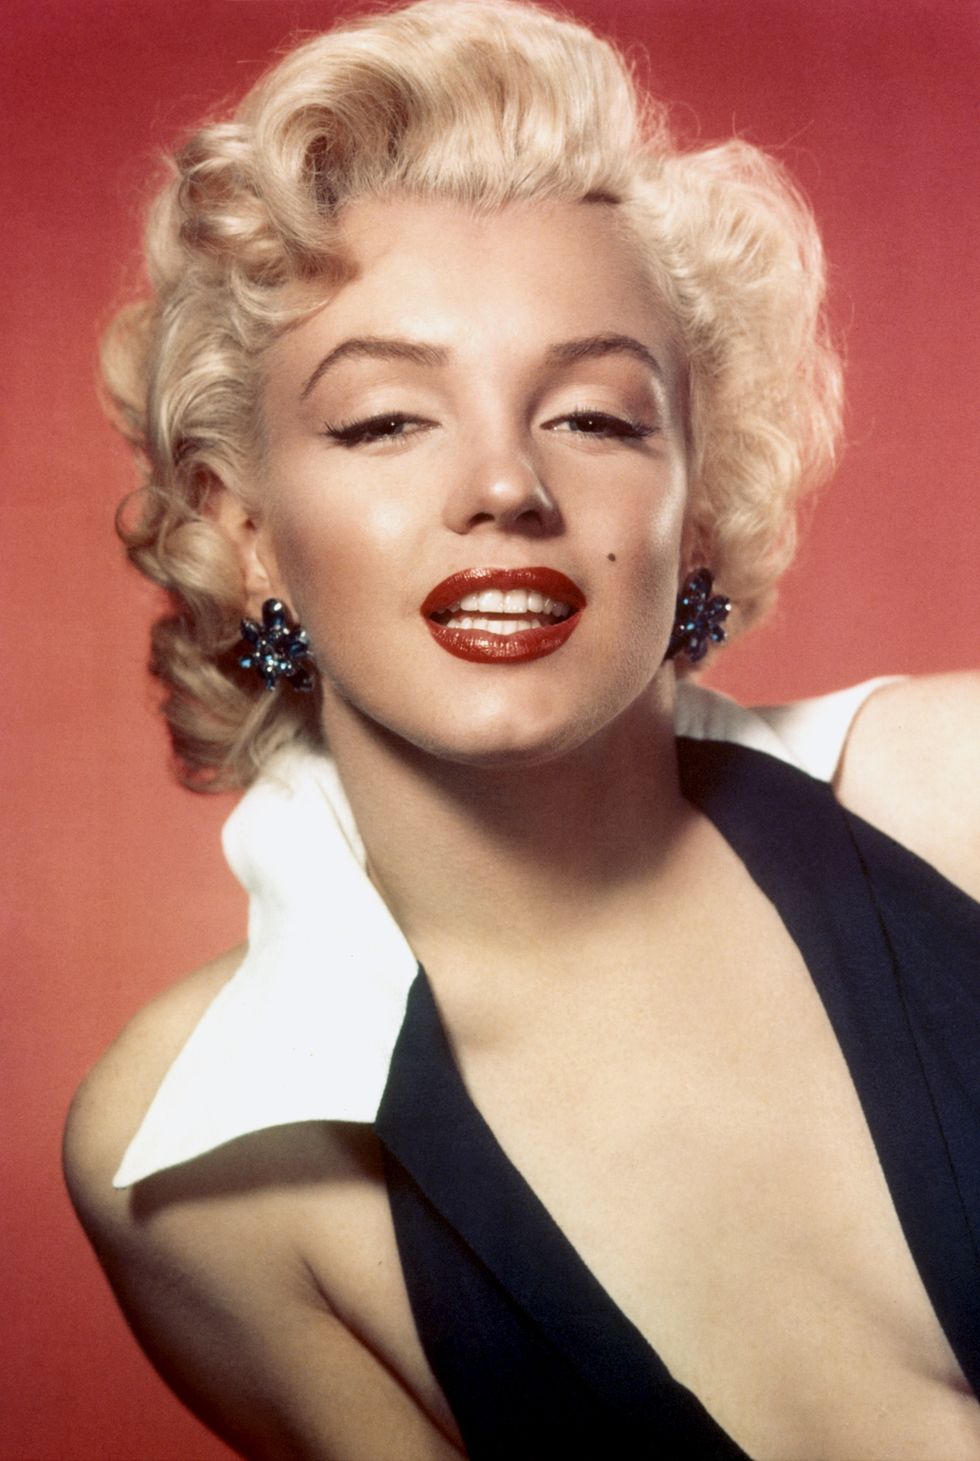 Marilyn Portrait